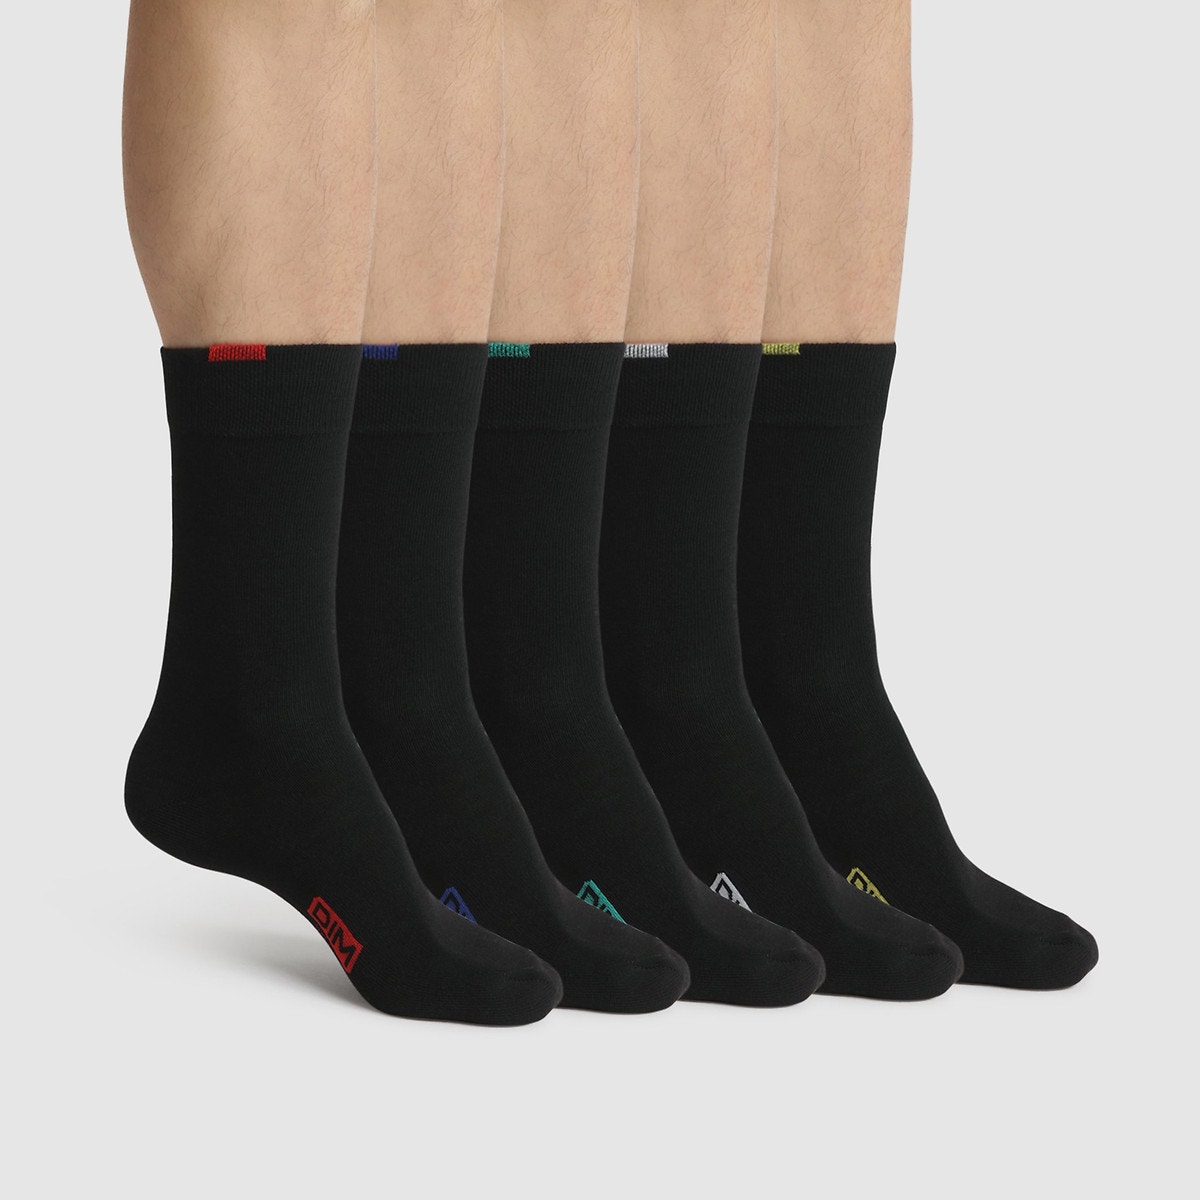 Σετ 5 ζευγάρια κάλτσες, Ecodim